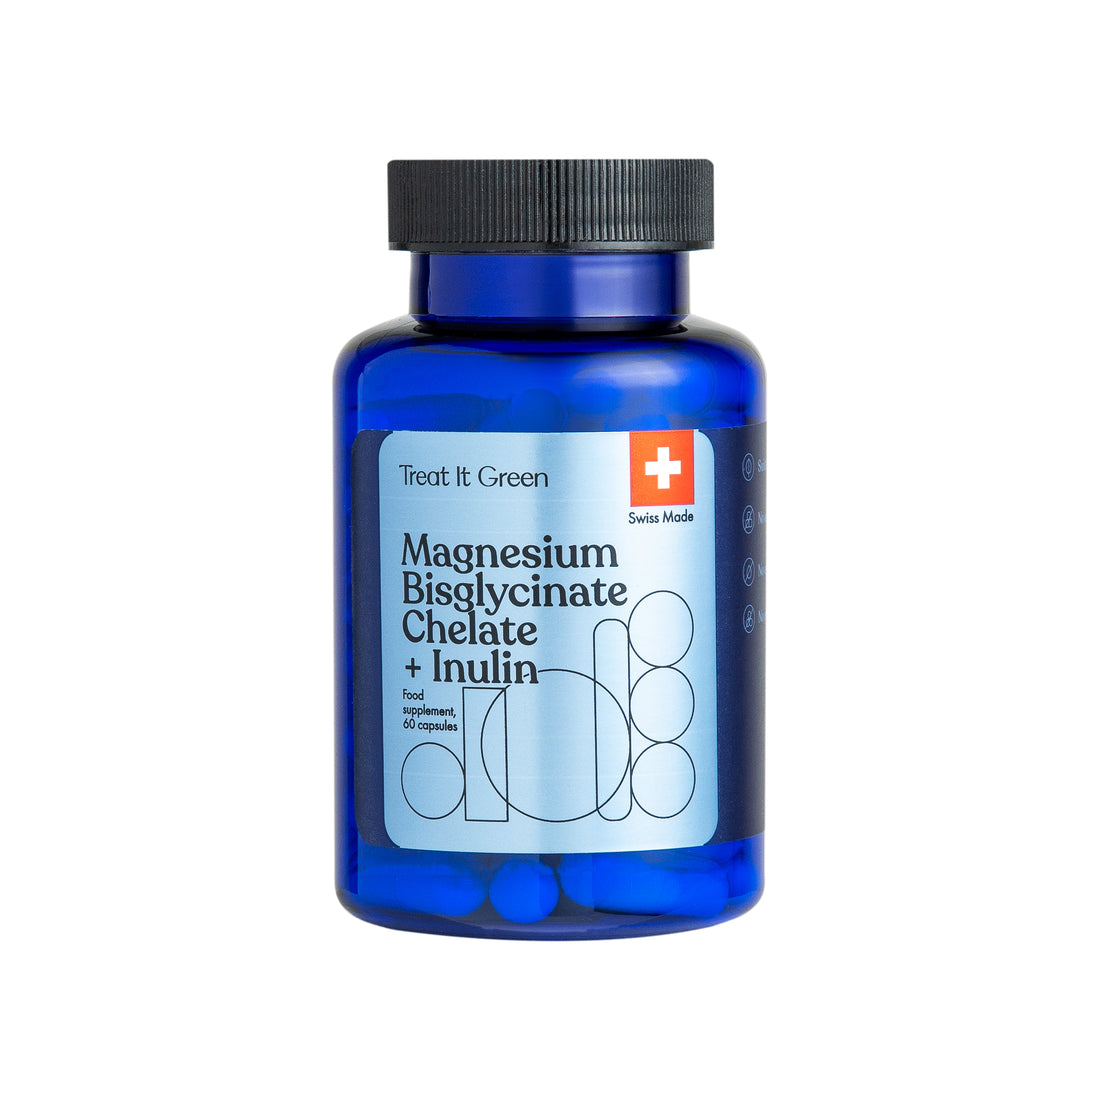 Magnesium bisglycinate chelate + Inulin (60 caps)